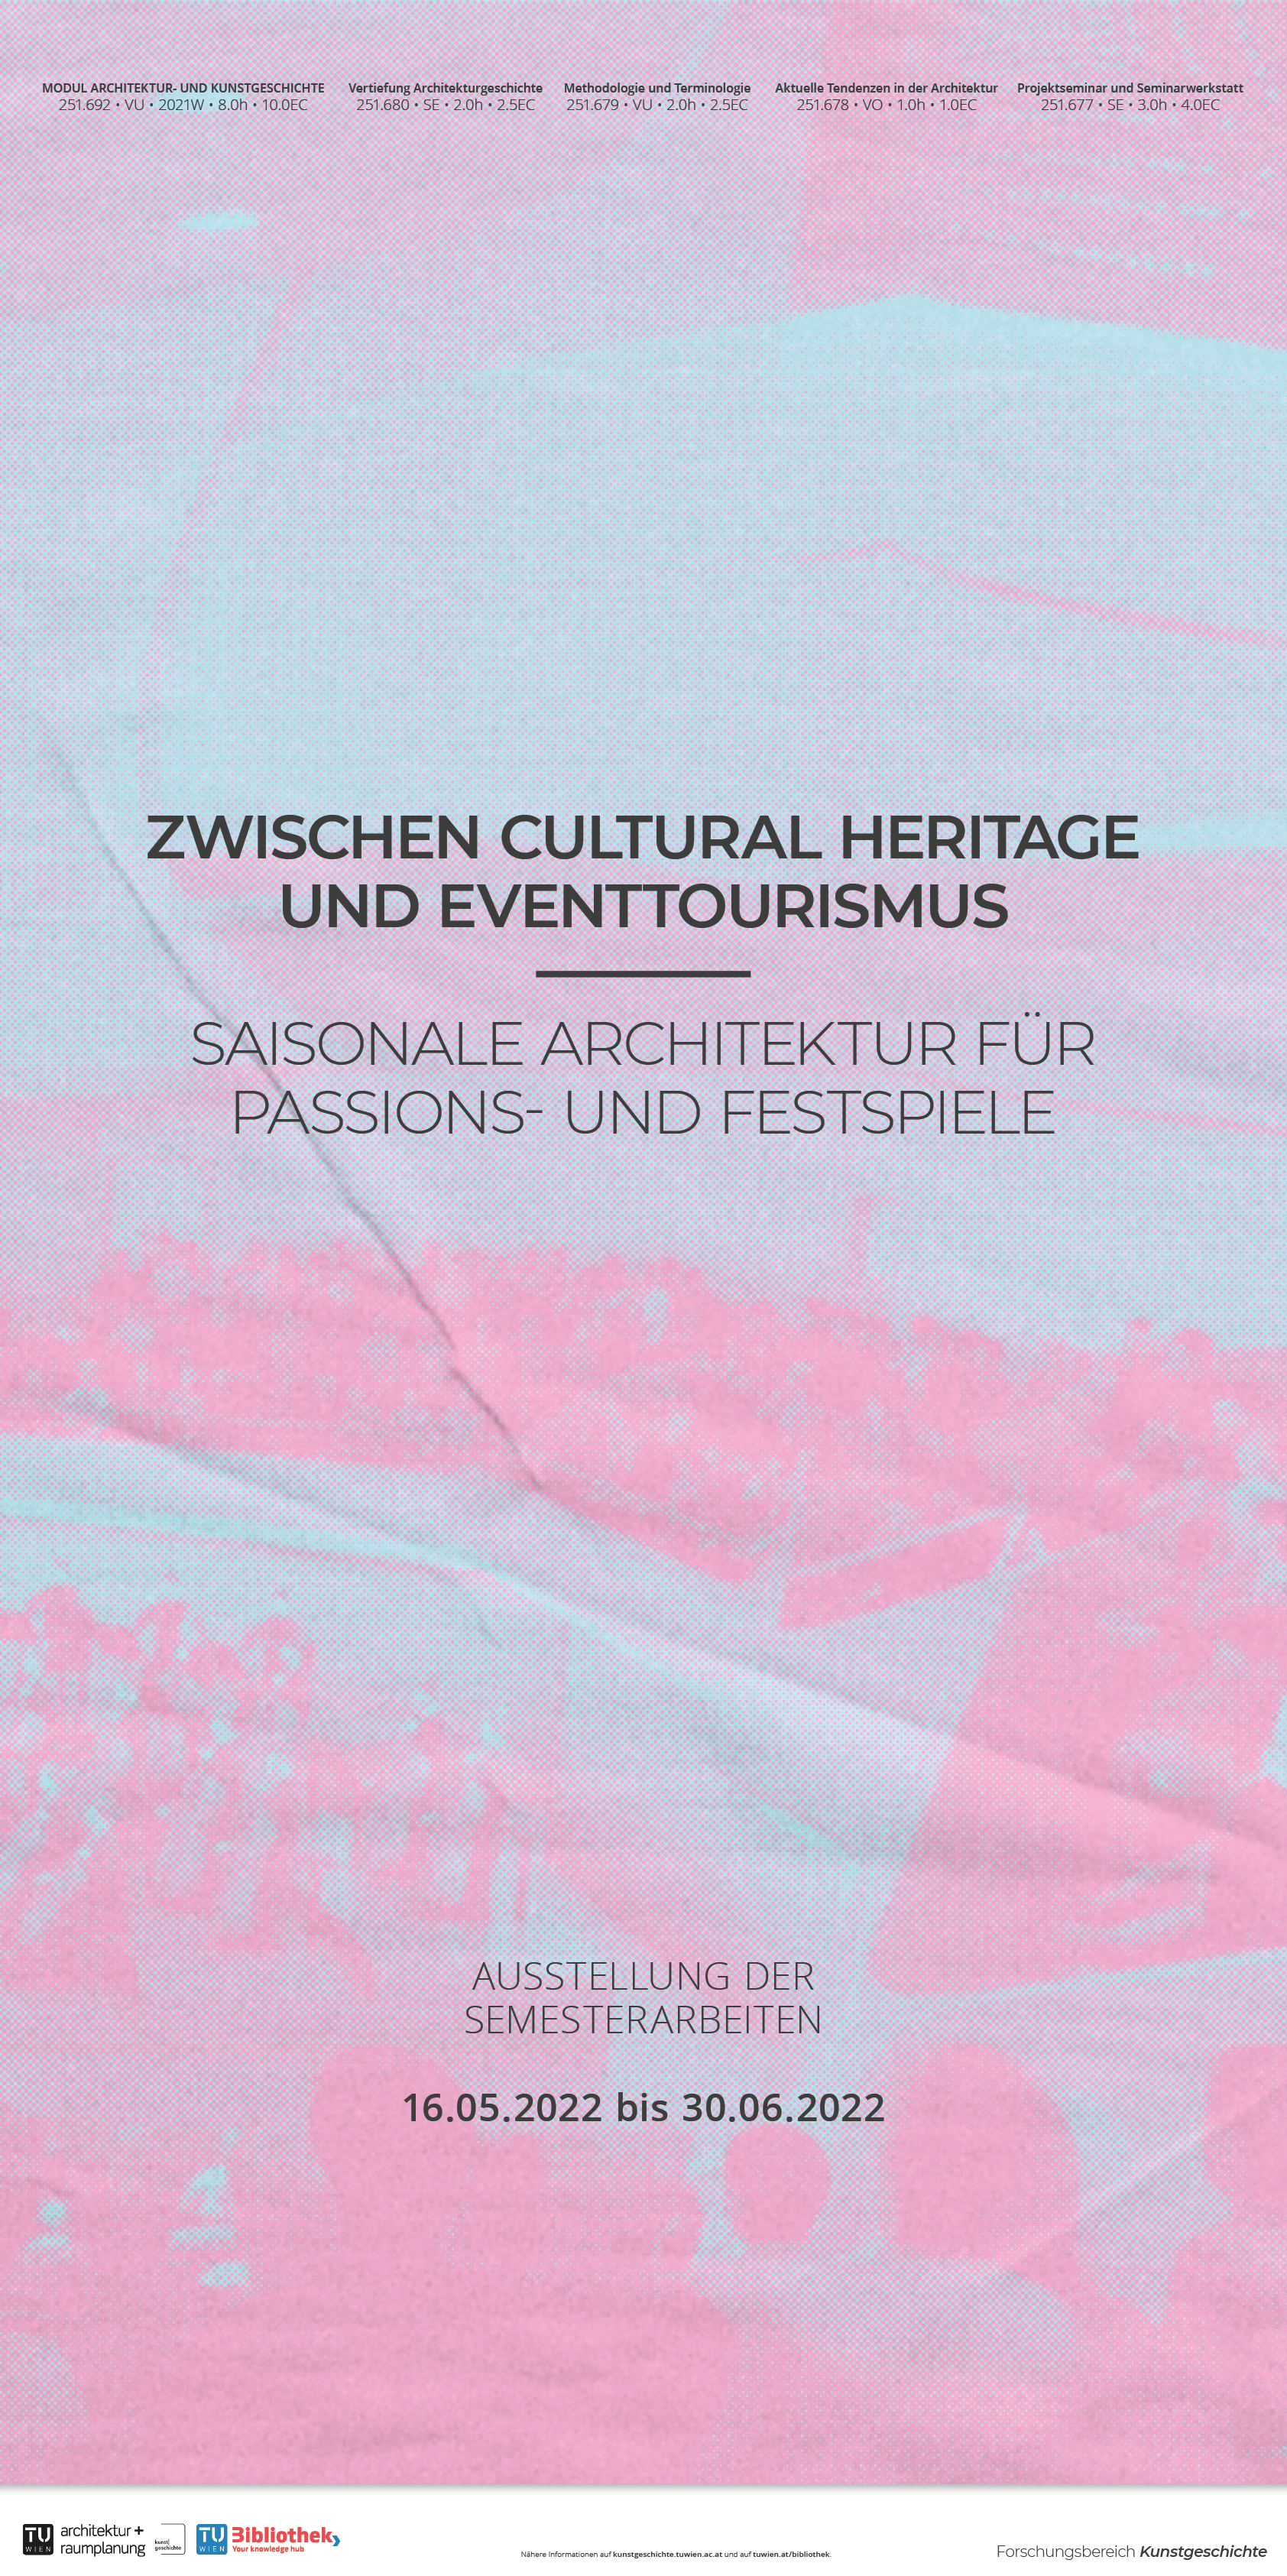 Zwischen Cultural Heritage und Eventtourismus – Saisonale Architektur für Passions- und Festspiele